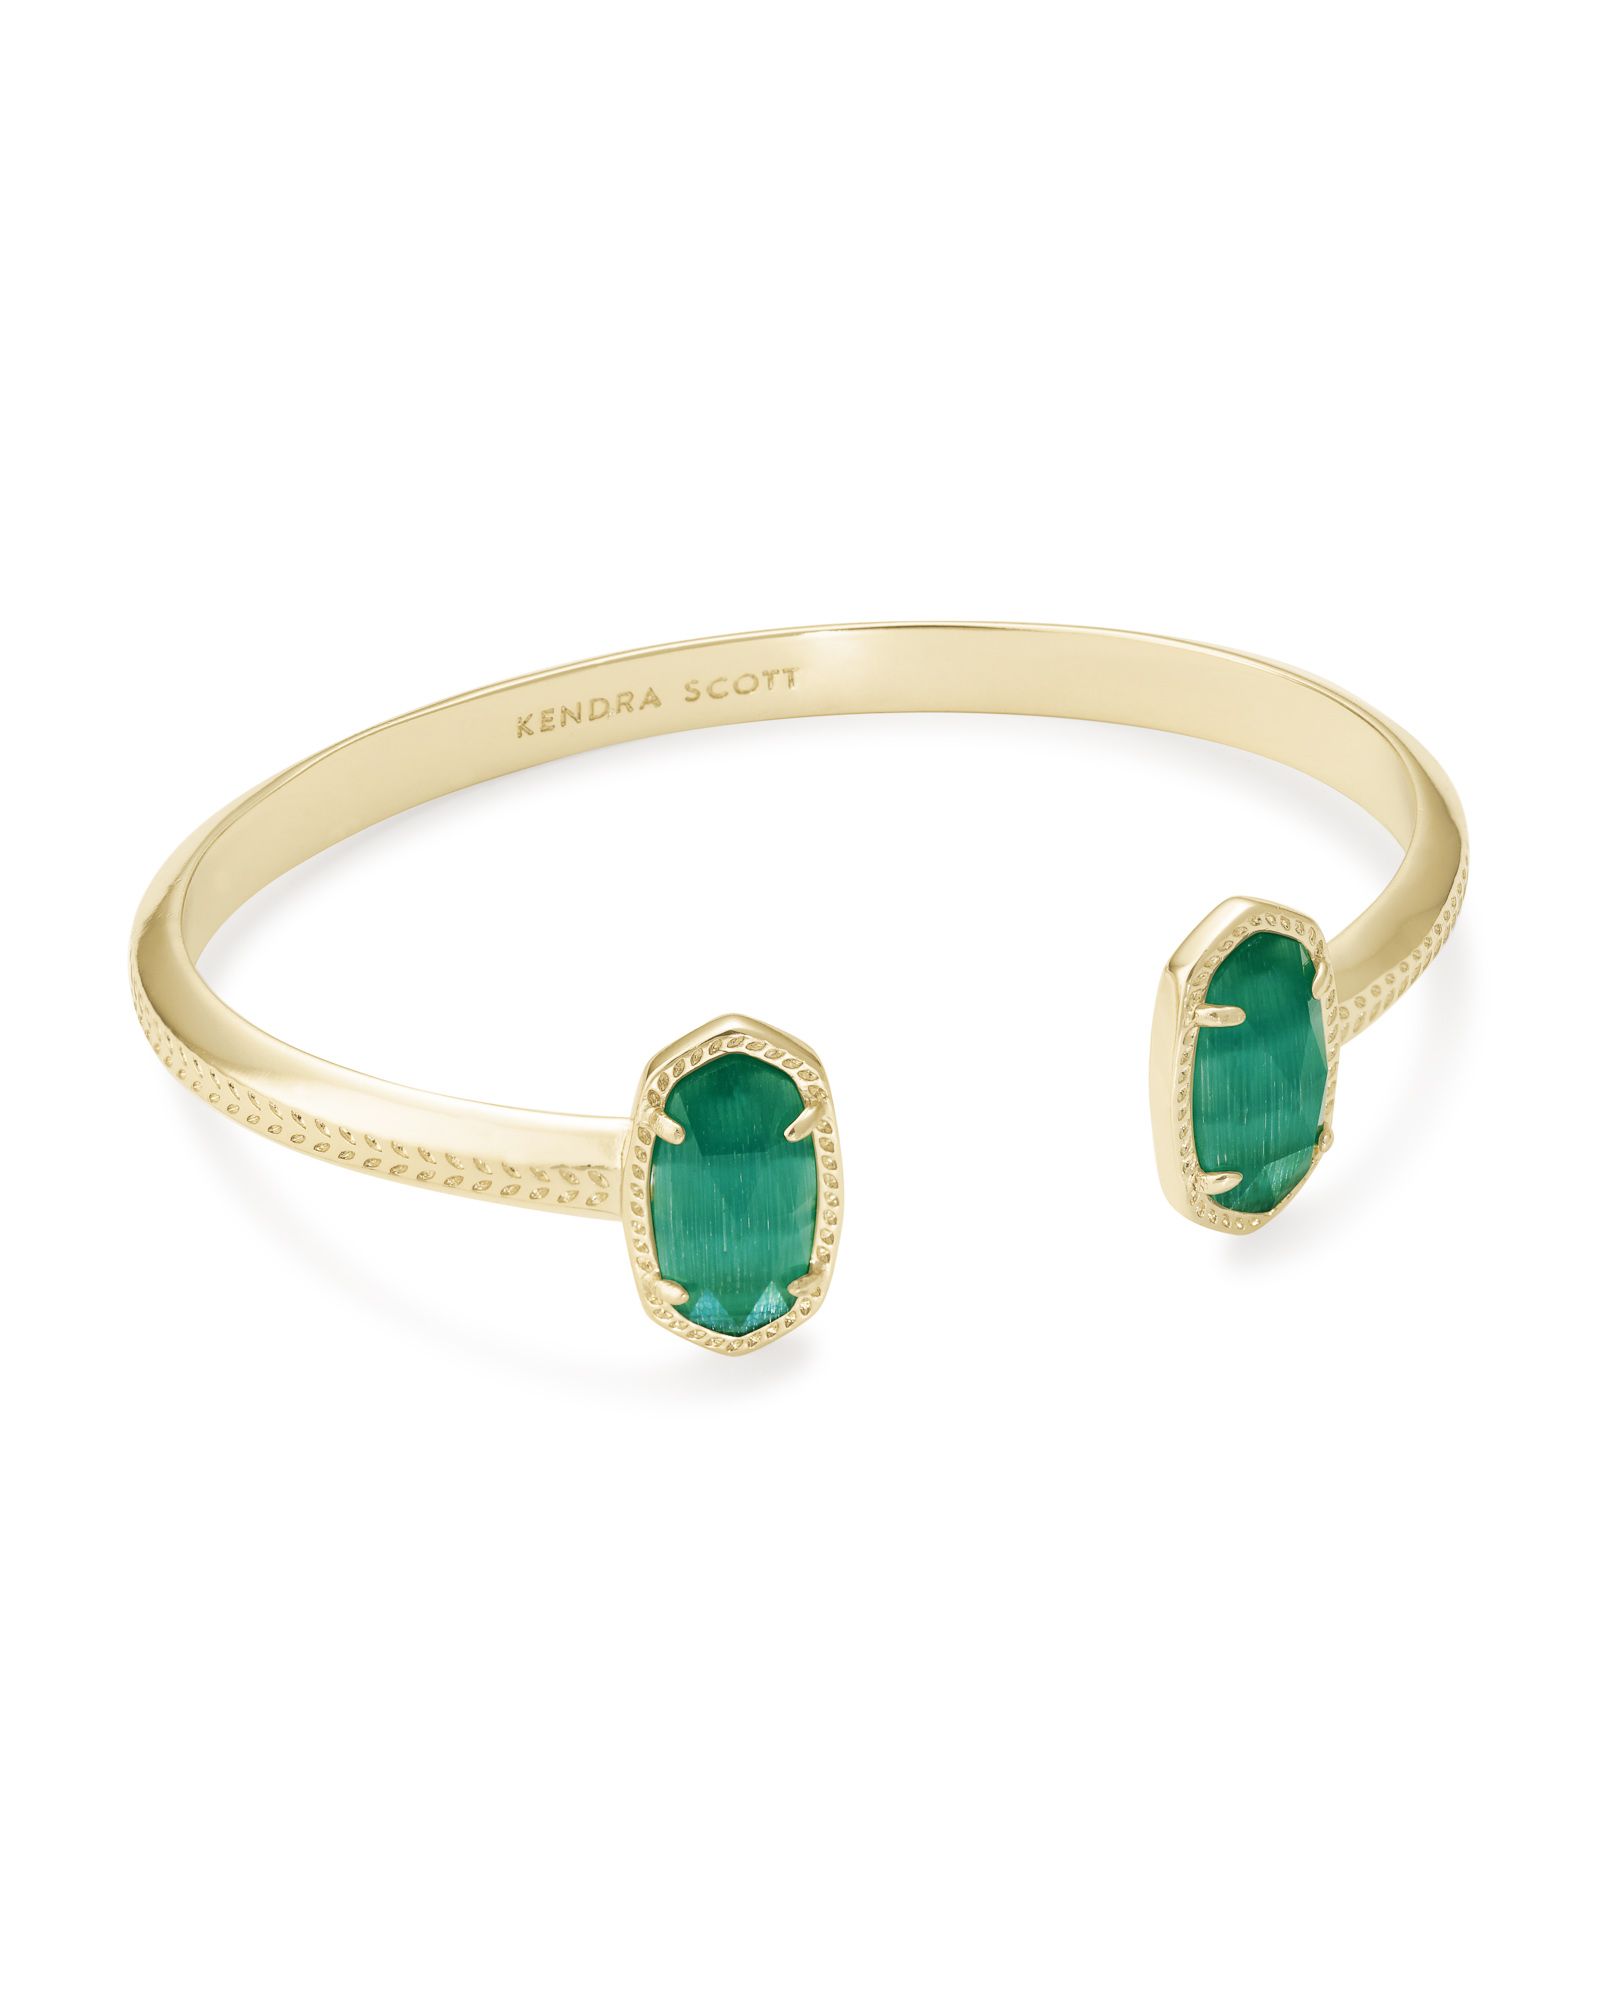 Elton Gold Cuff Bracelet in Emerald Cat's Eye | Kendra Scott